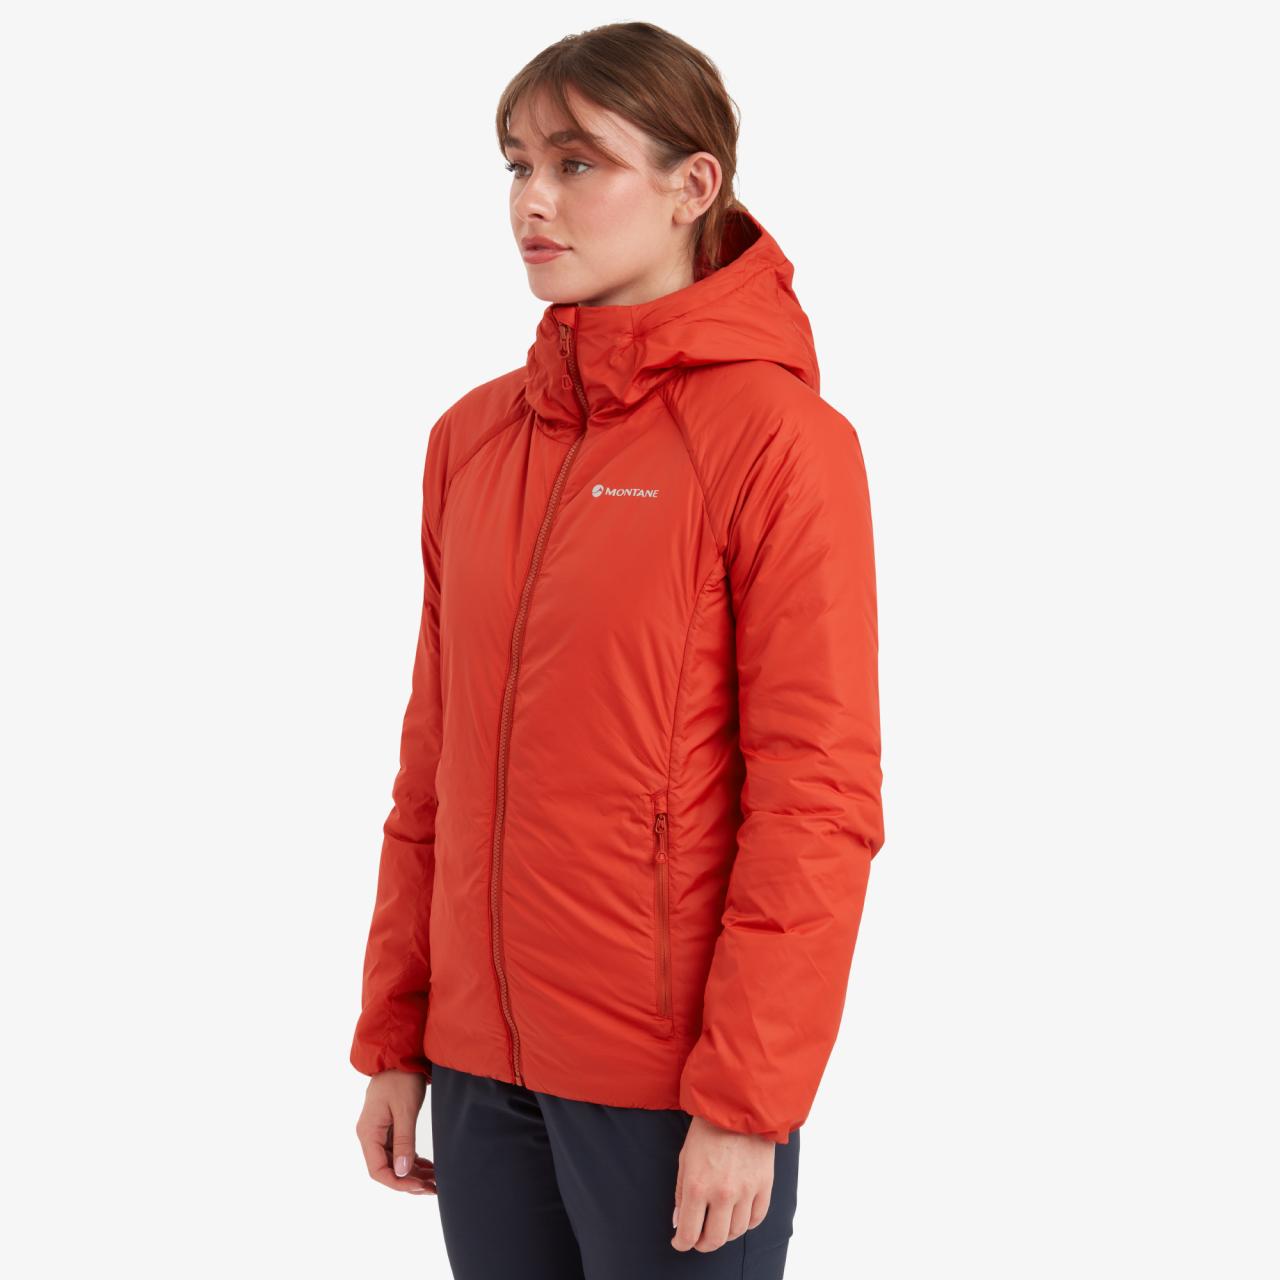 FEM RESPOND HOODIE-SAFFRON RED-UK8/XS dámská bunda s kapucí červená